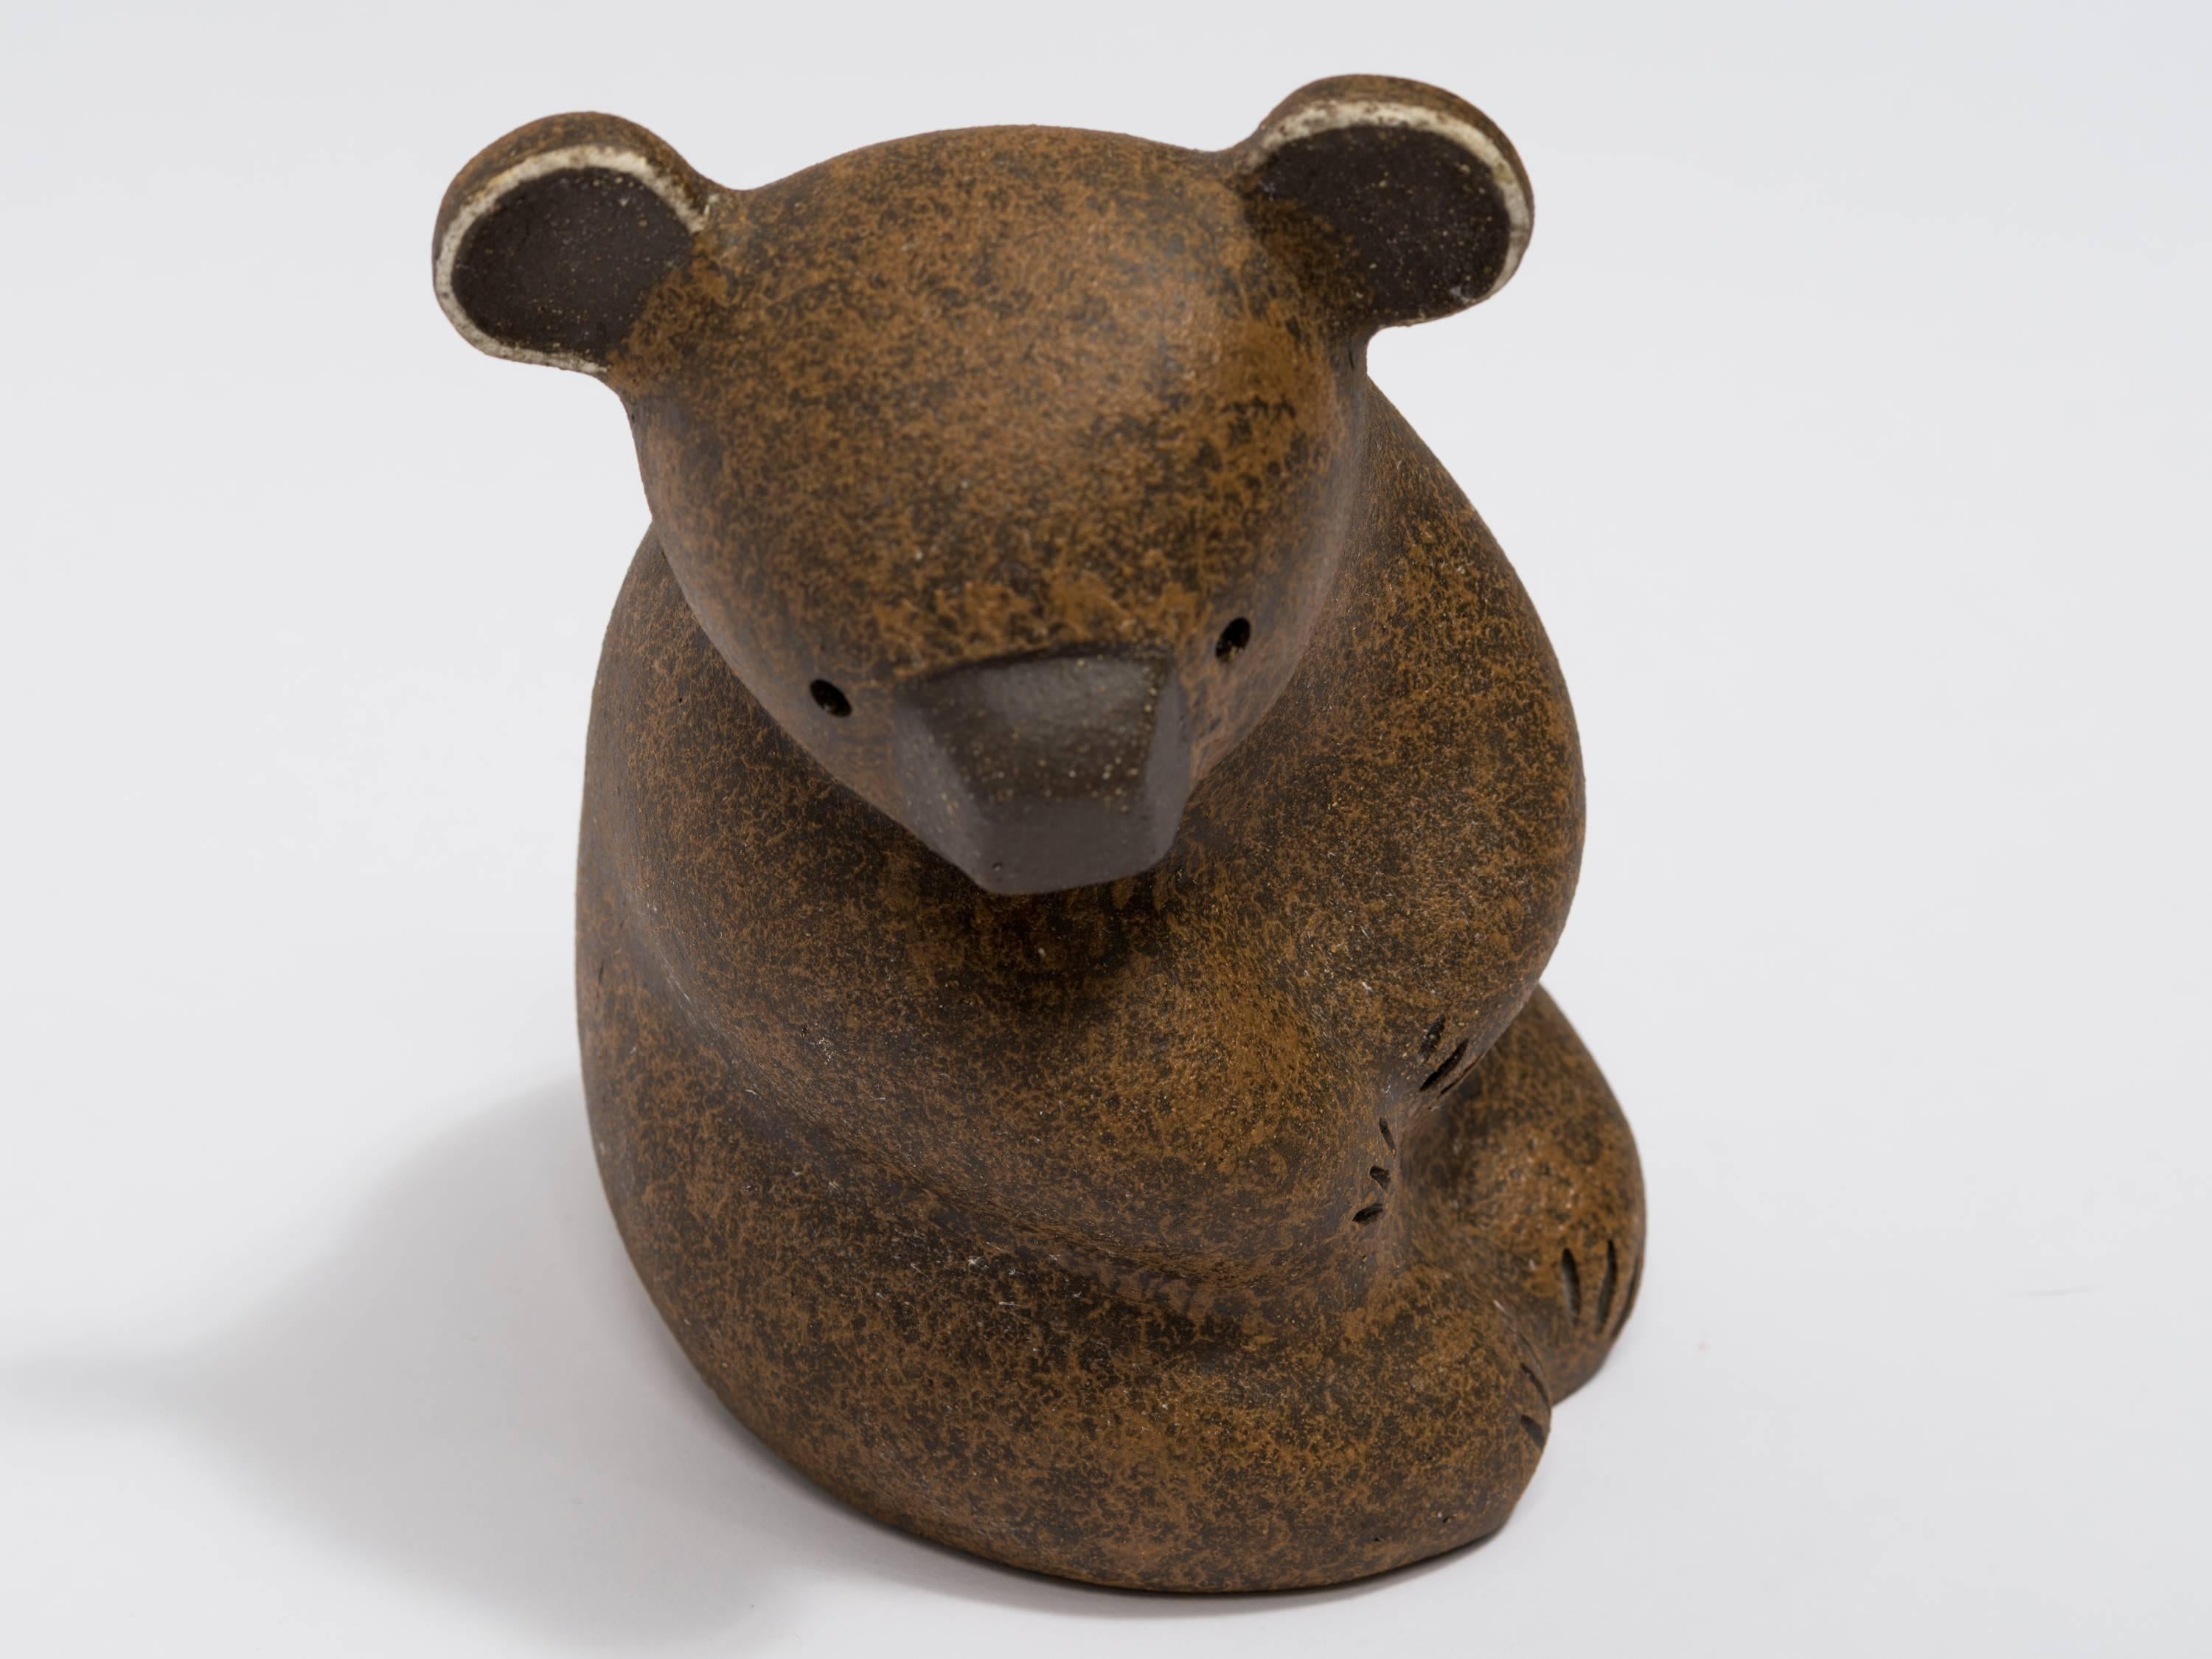 A 1970s stoneware Koala bear sculpture by John H. Seymour.